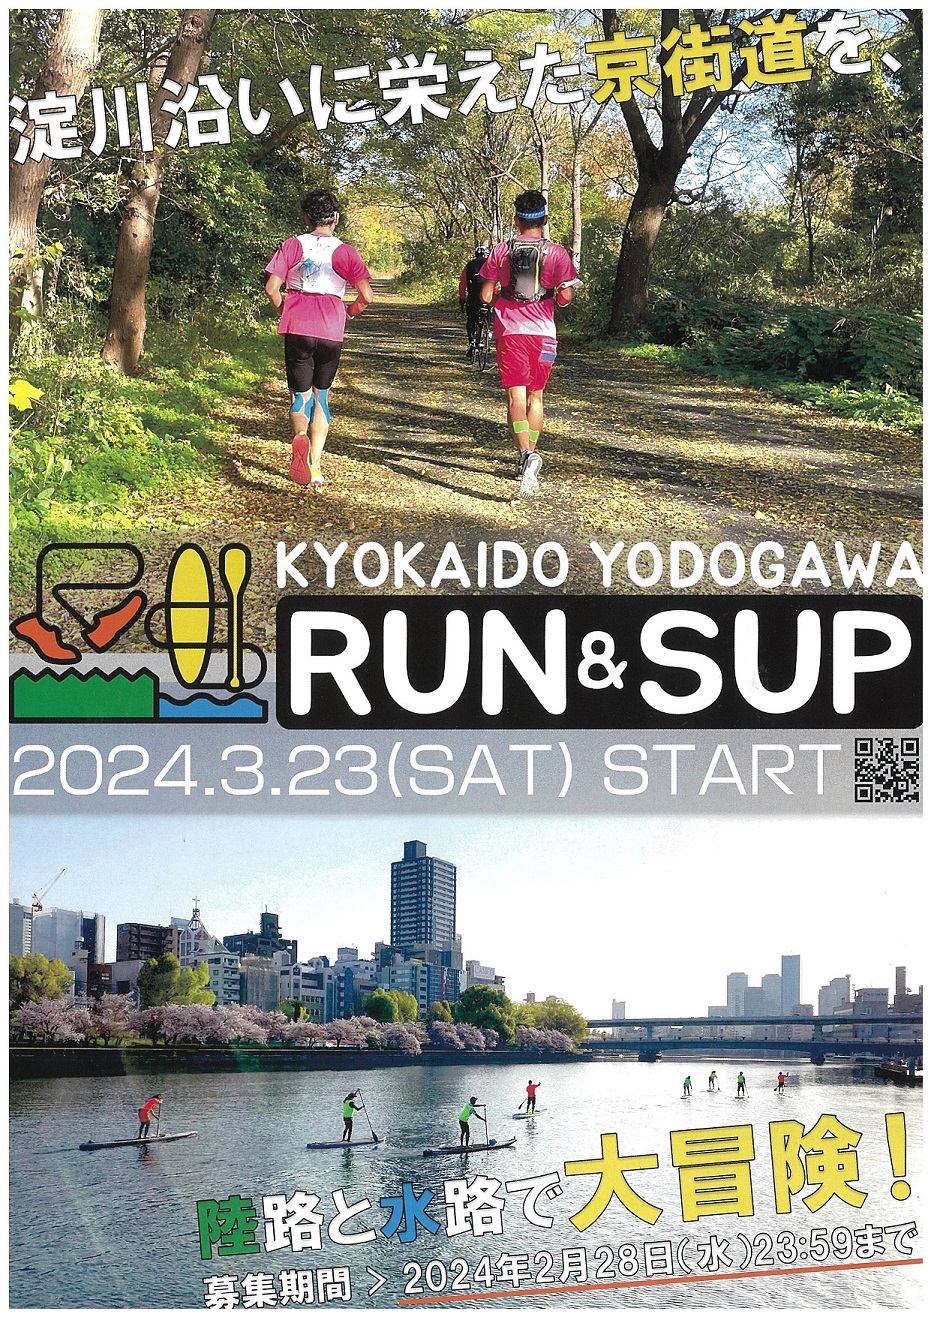 「京街道Yodogawa RUN & SUP Challenge2024」のちらし